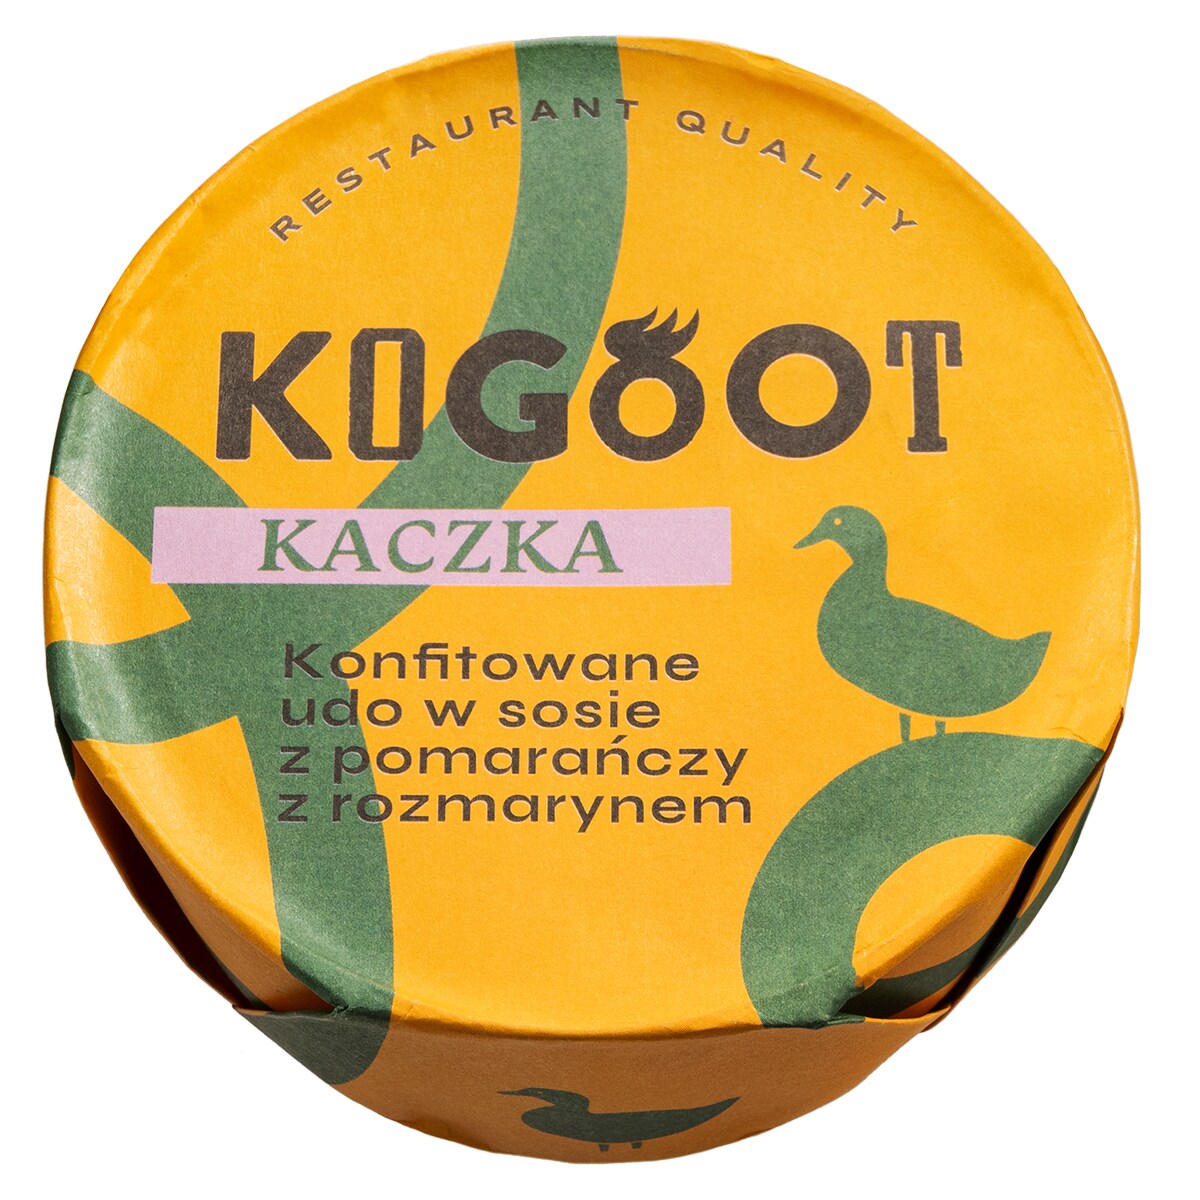 Консервовані продукти Kogoot -  Качине стегно конфі в апельсиновому соусі з розмарином